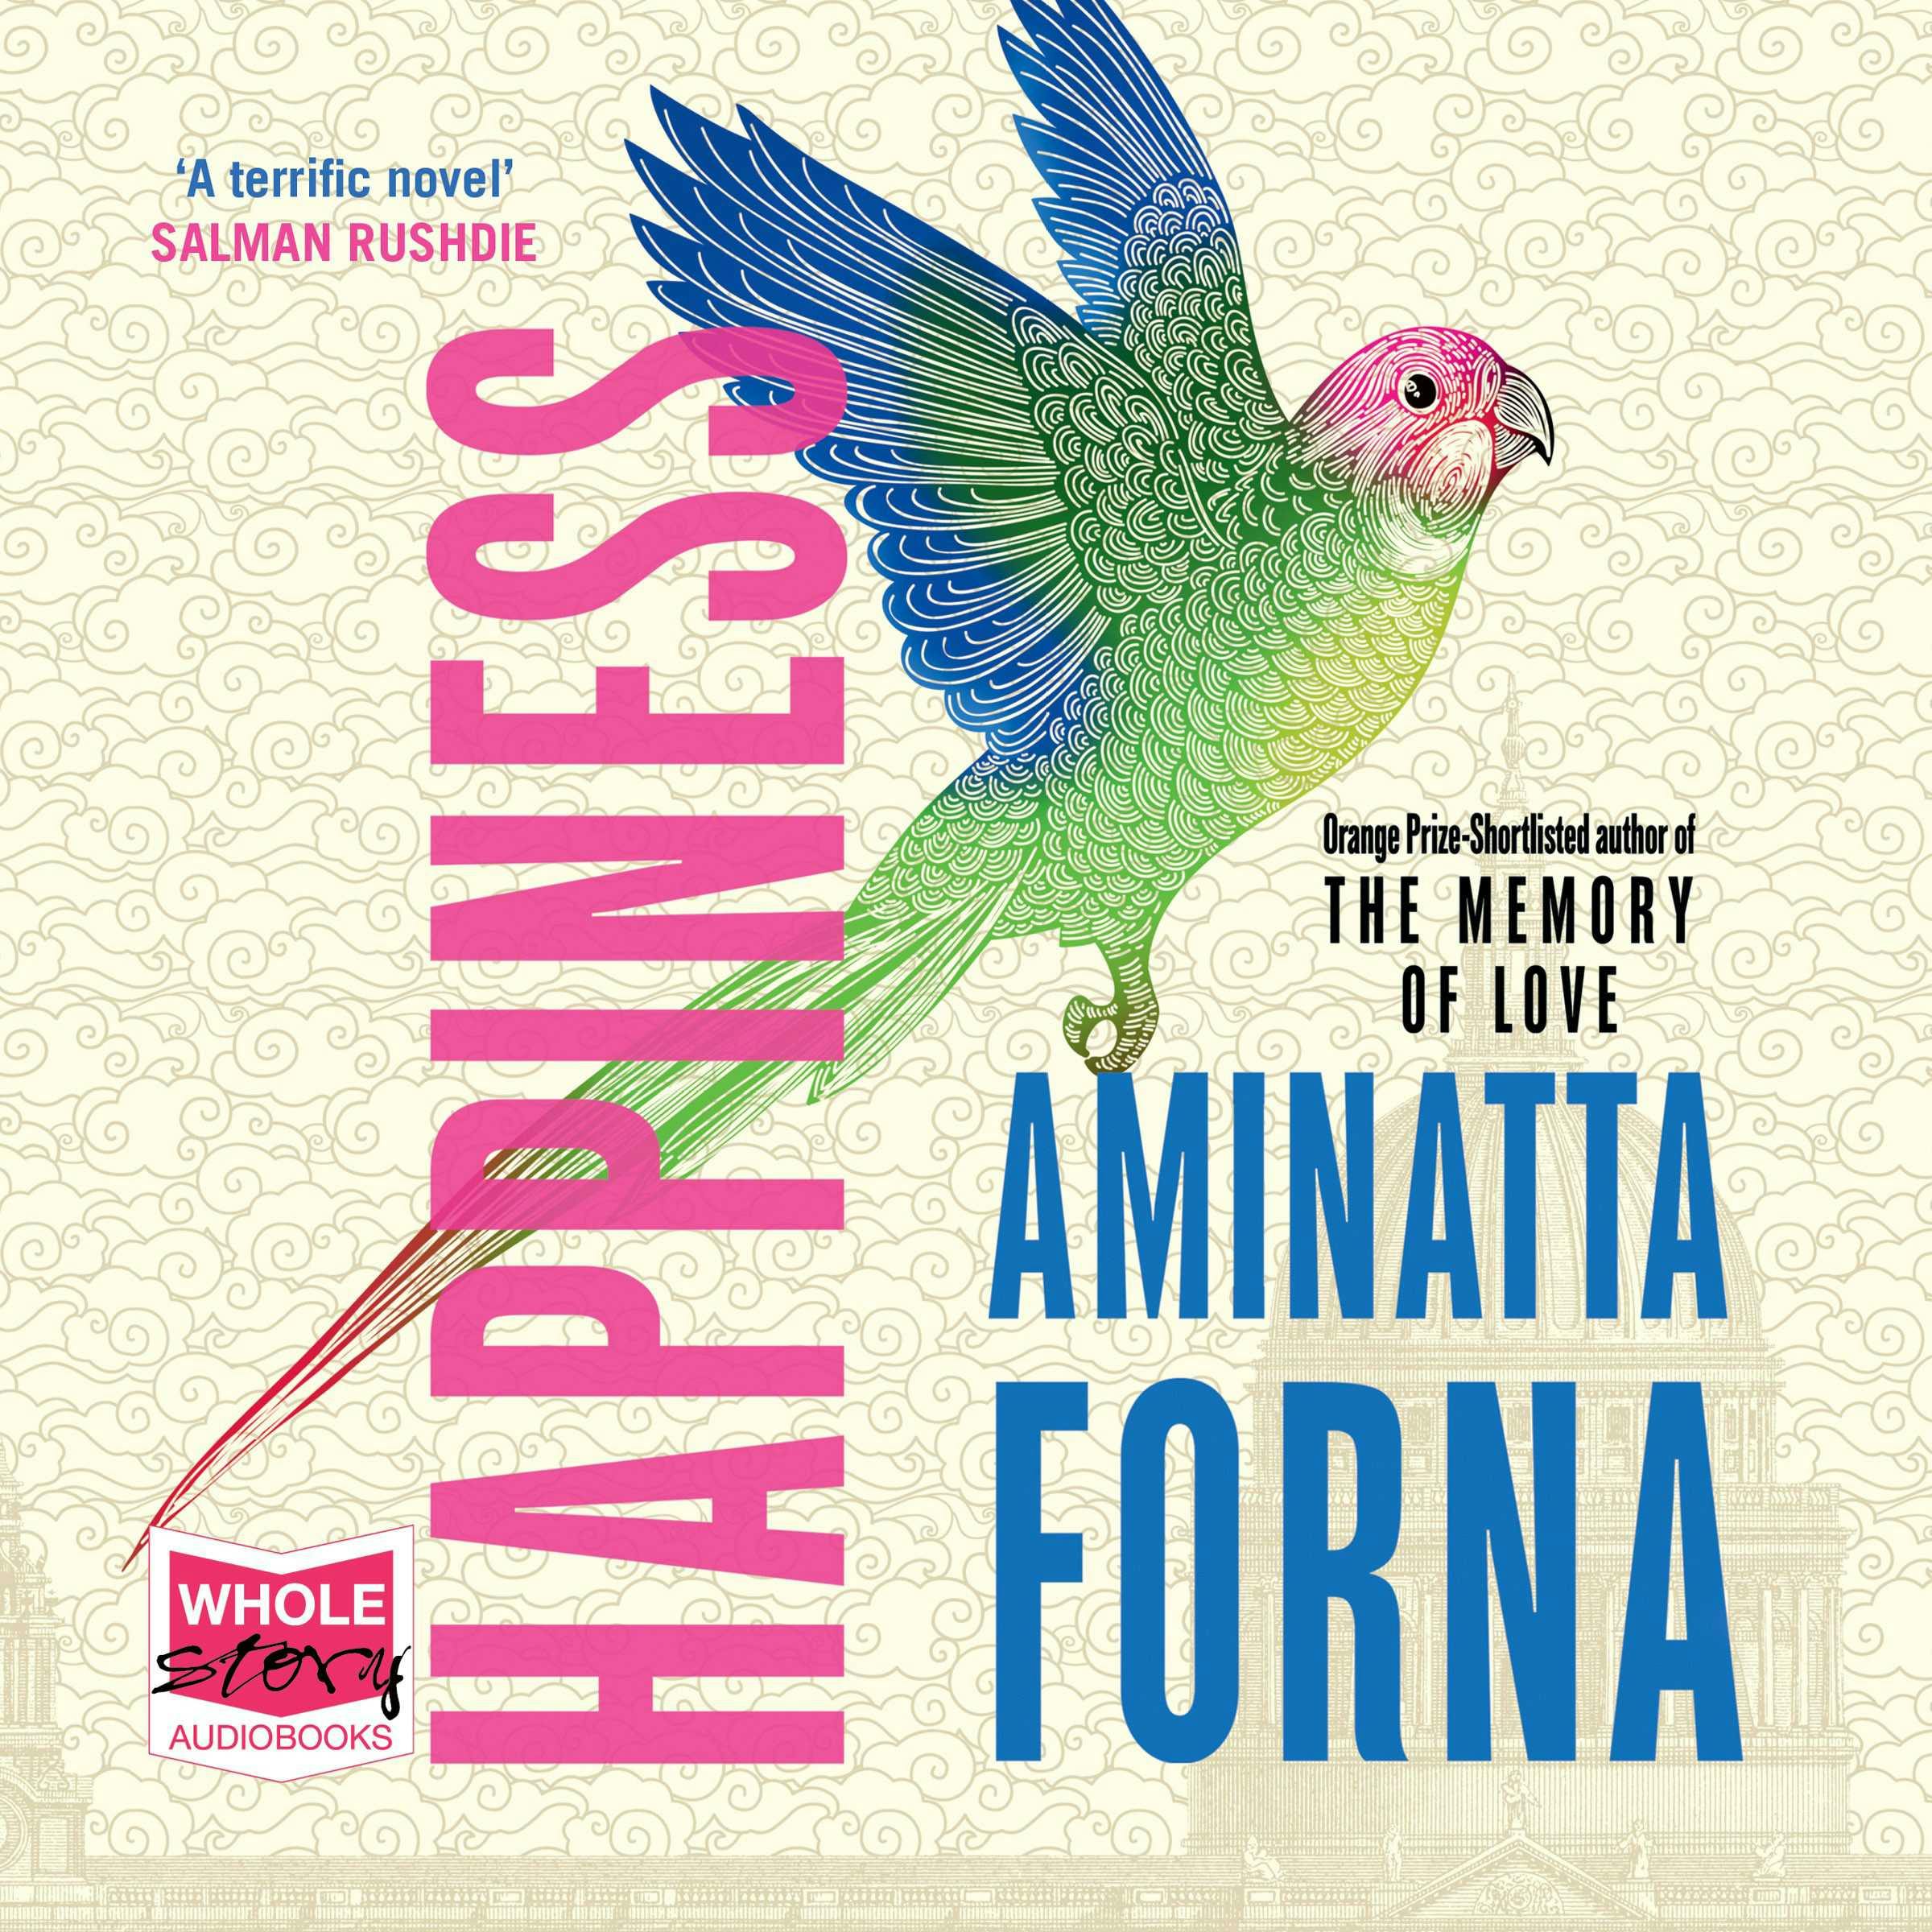 Happiness - Aminatta Forna